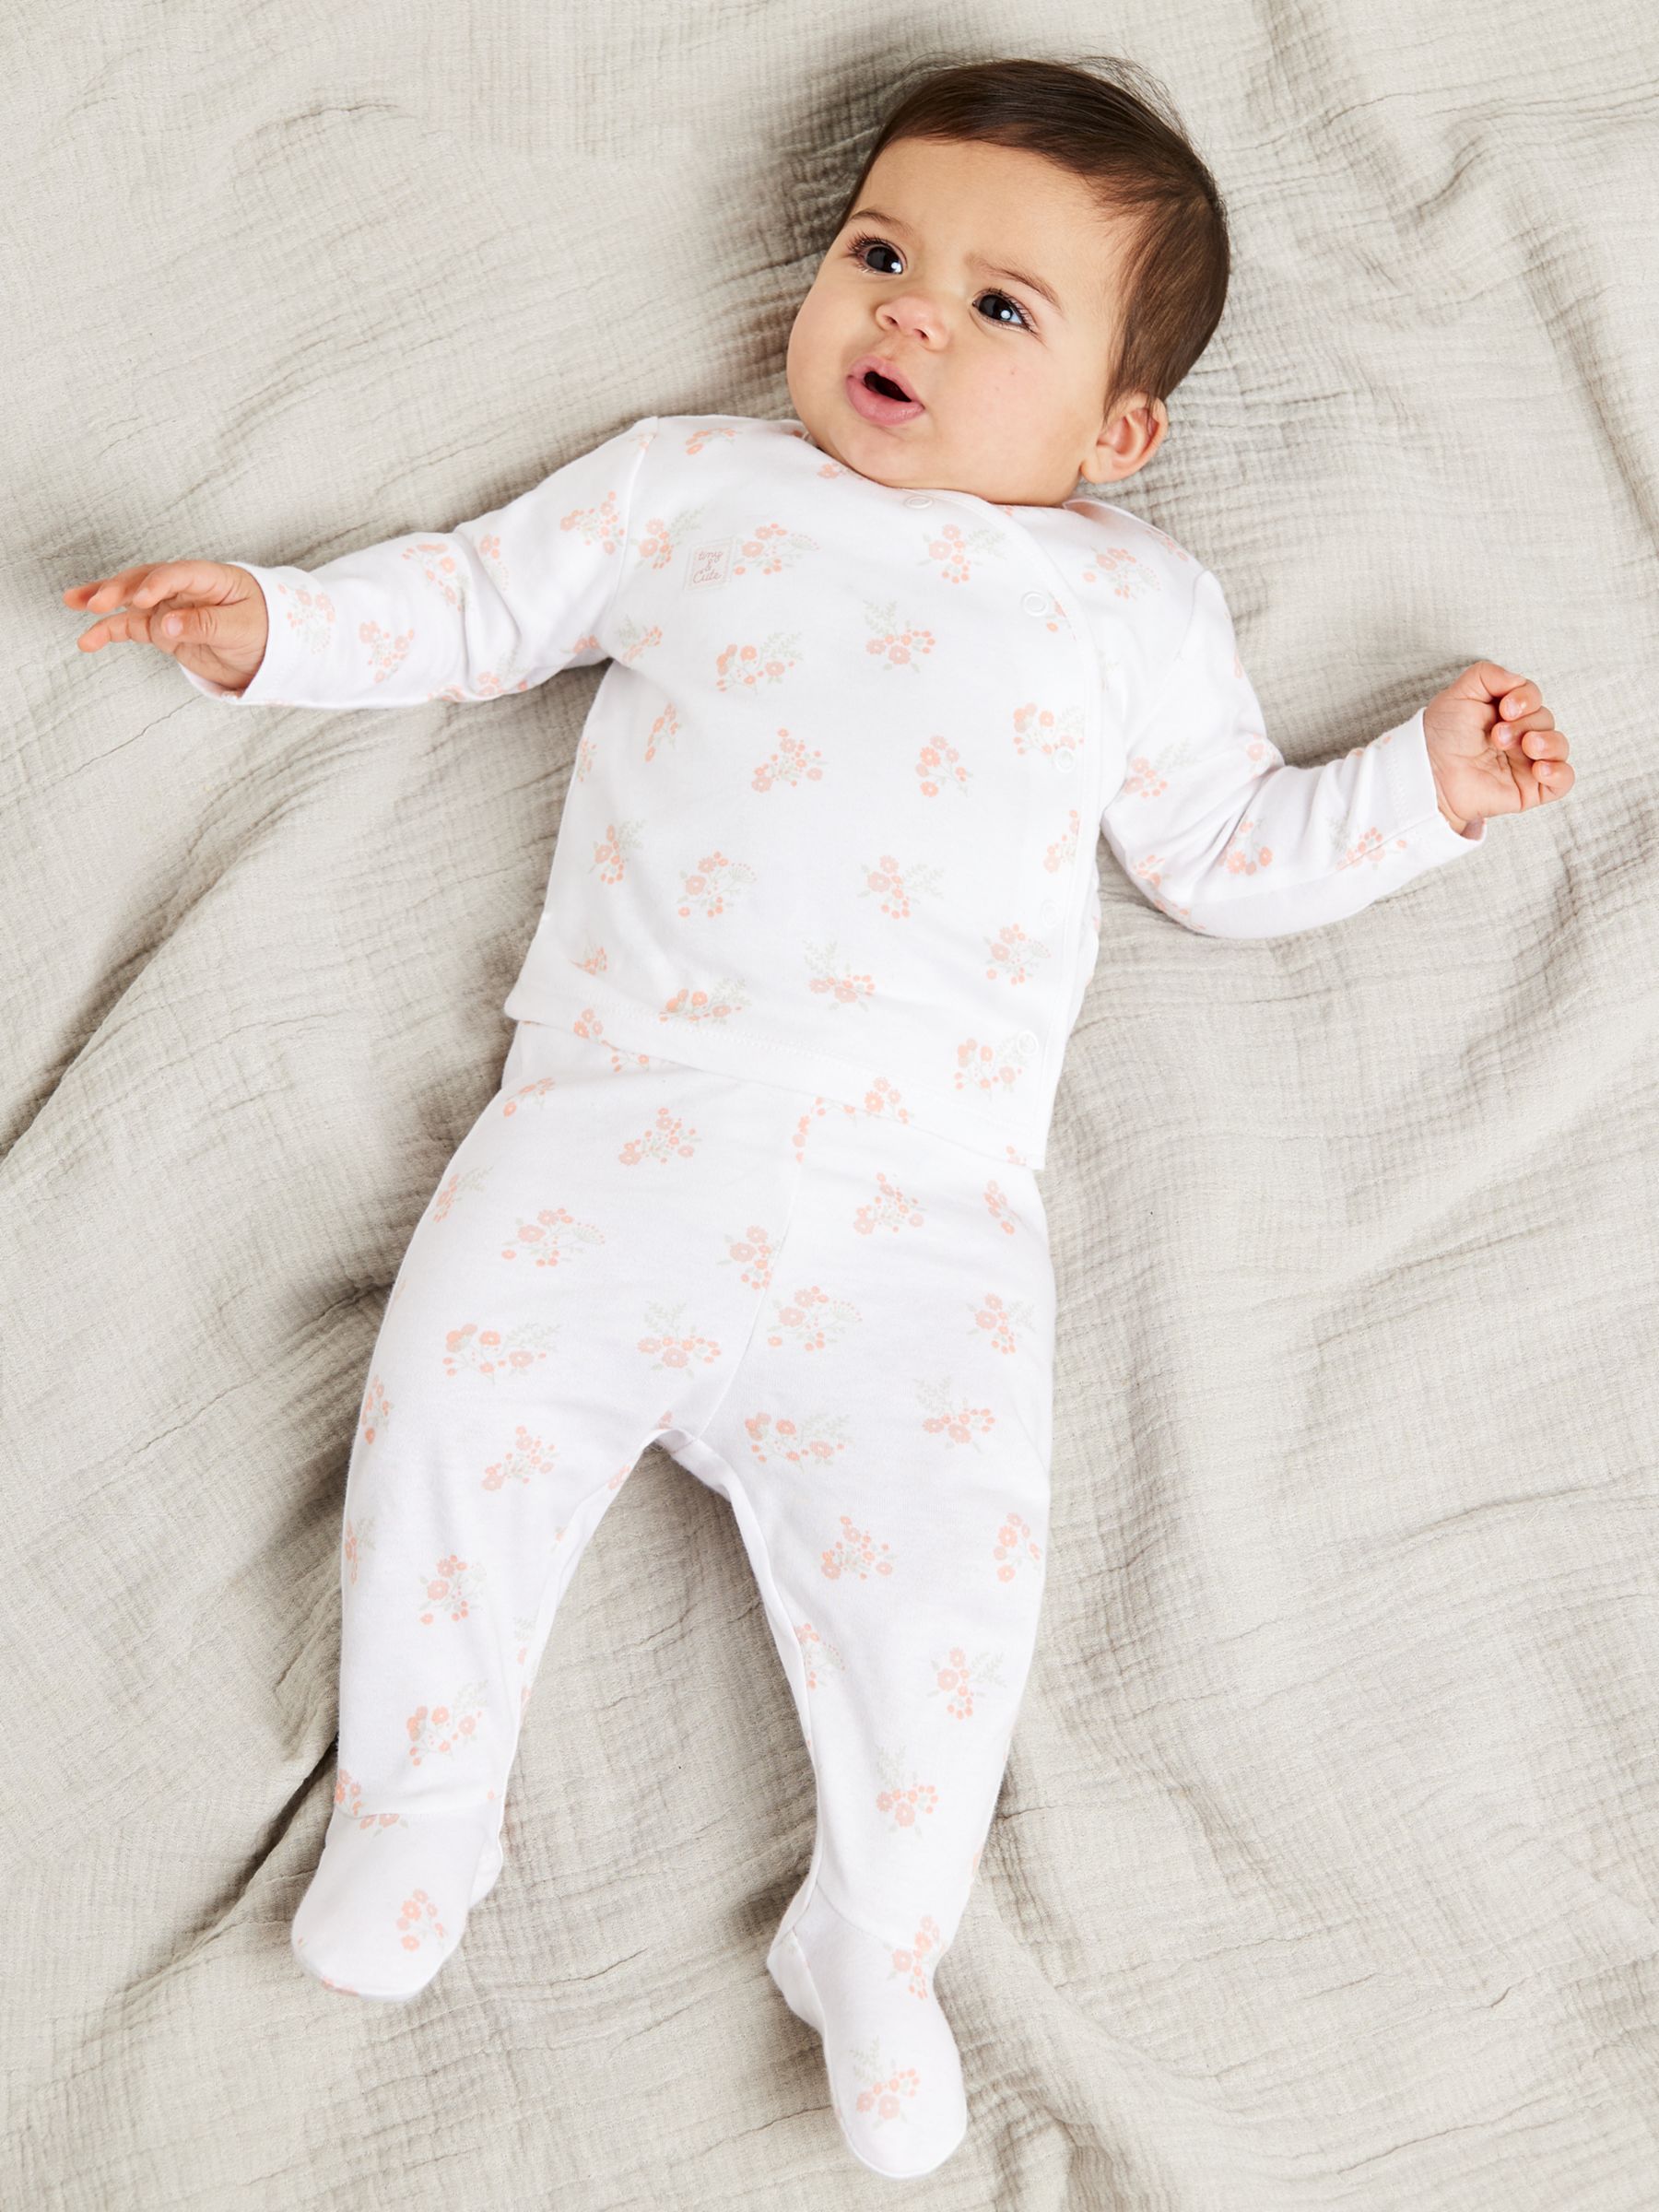 Mini Cuddles Baby Floral Applique Sleepsuits, Hat & Gloves Set, White/Pink, Newborn